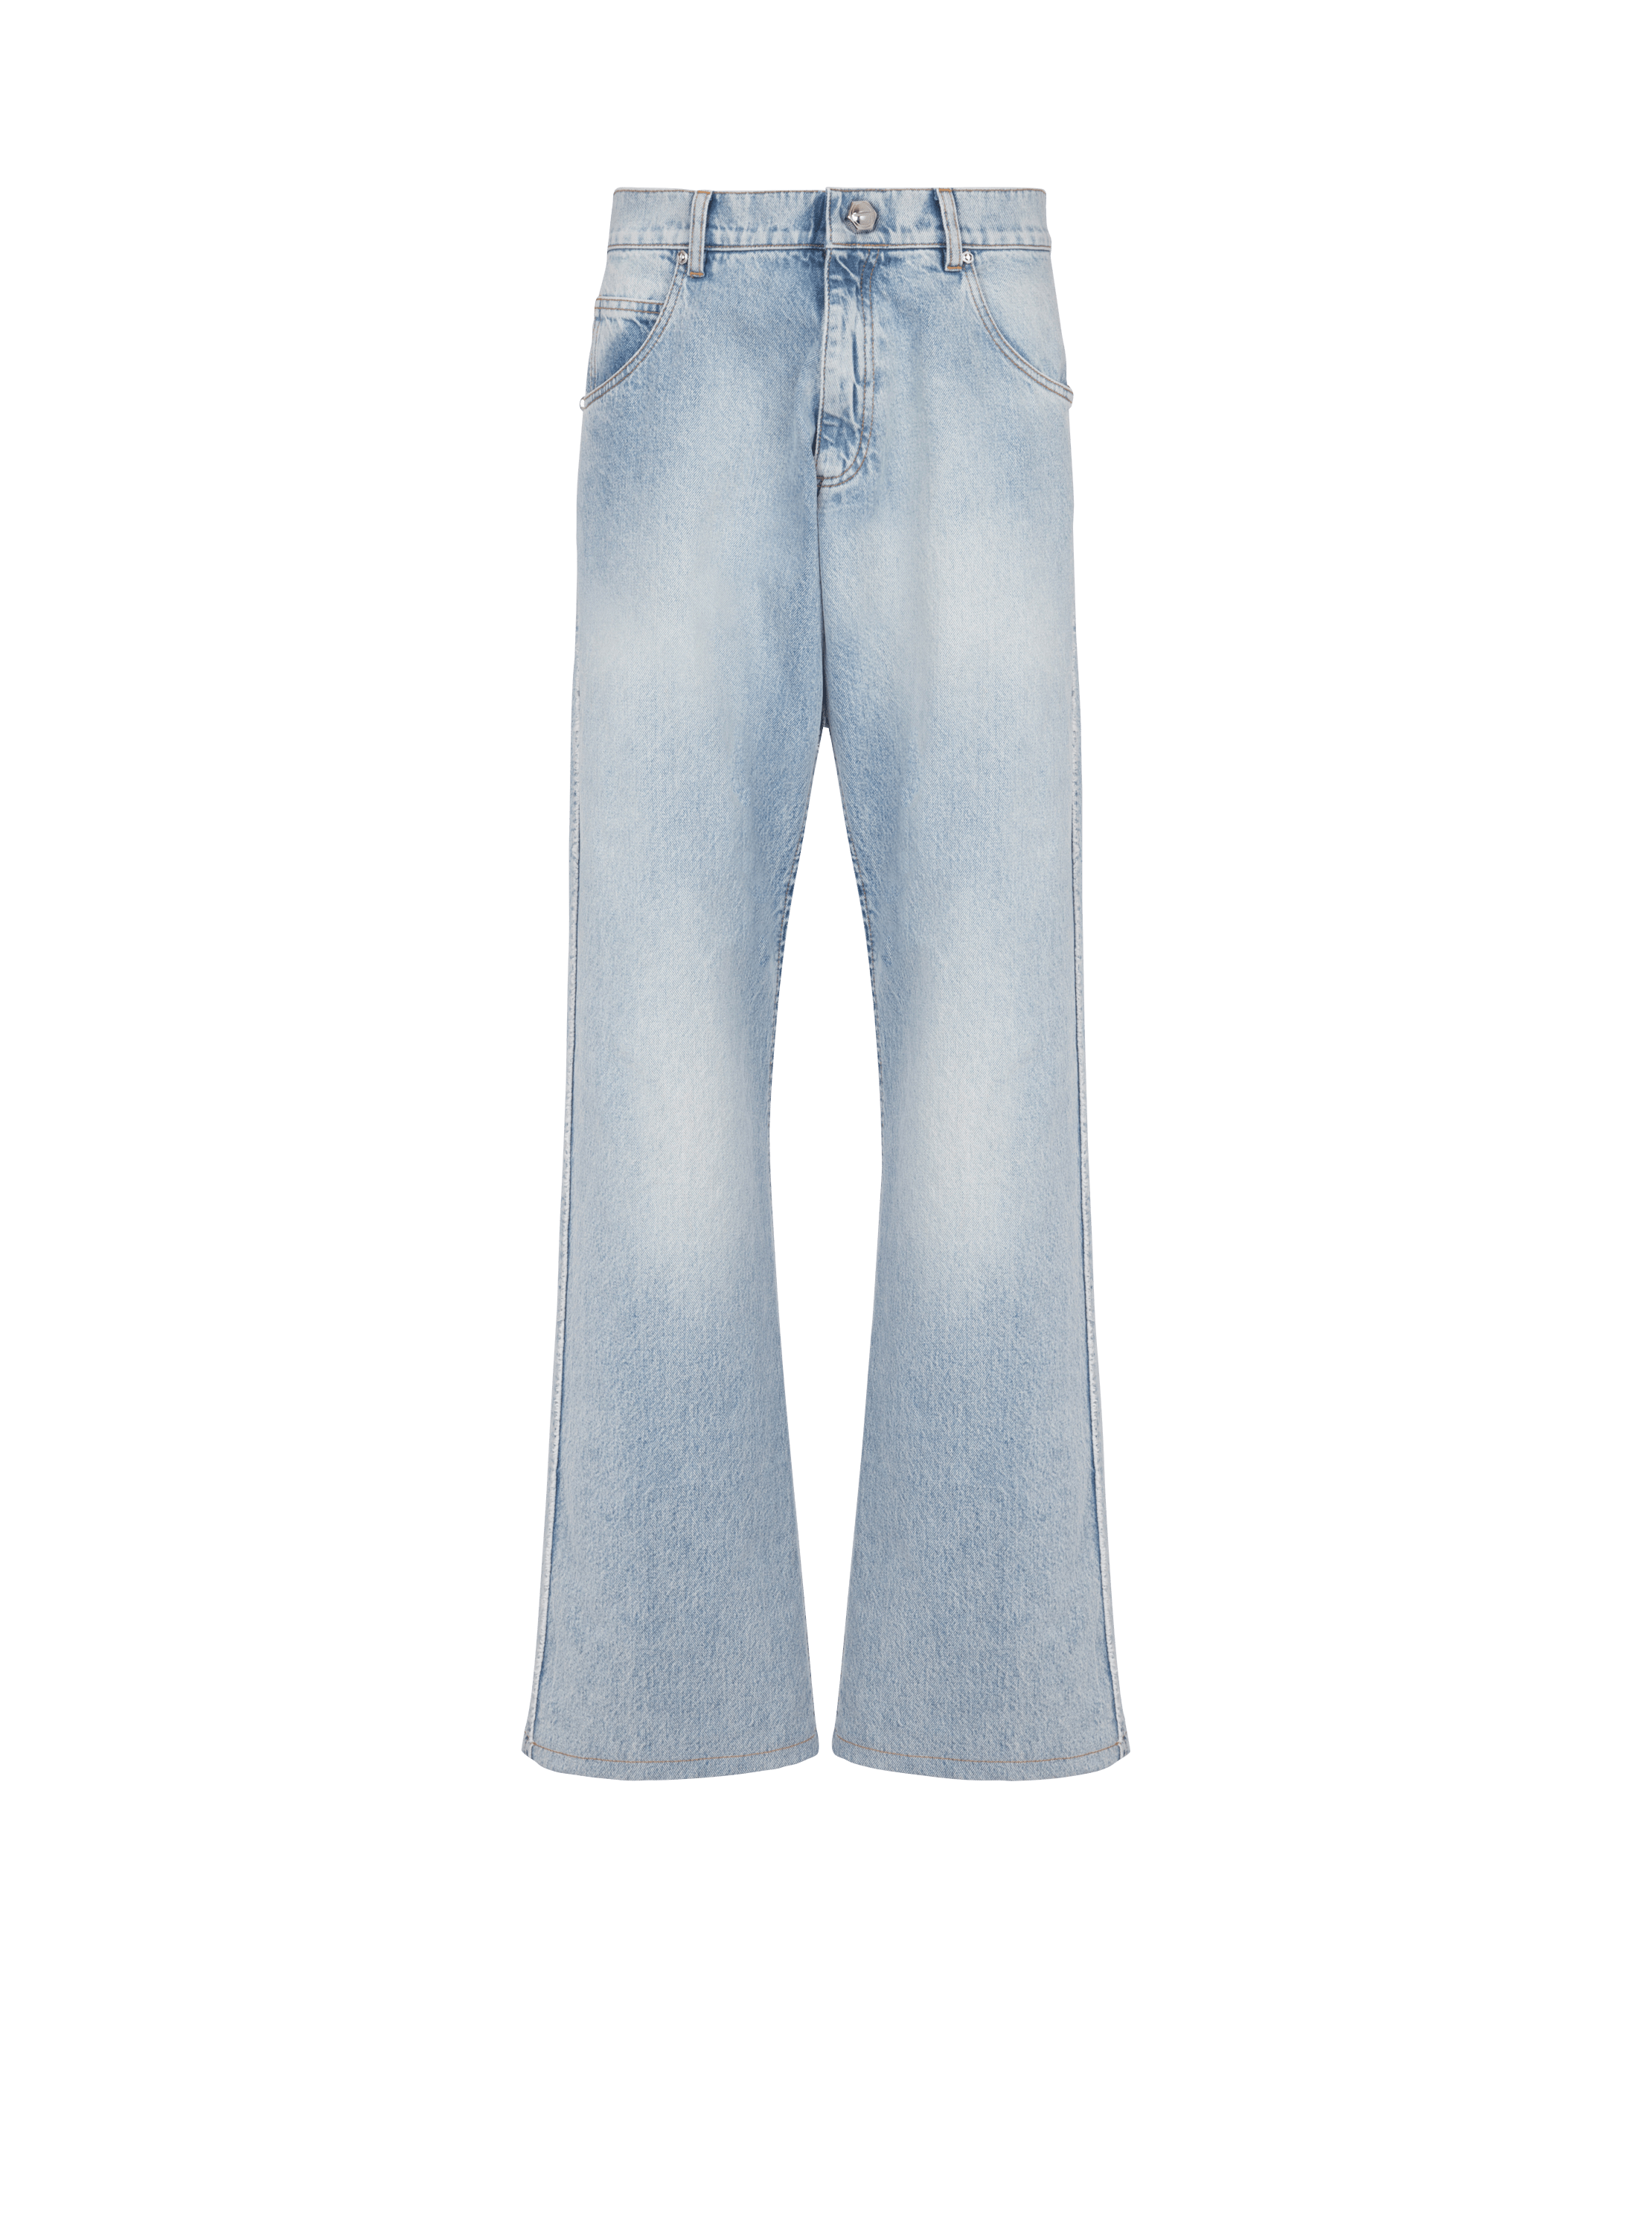 Weite Jeans aus Baumwolle, blau, hi-res